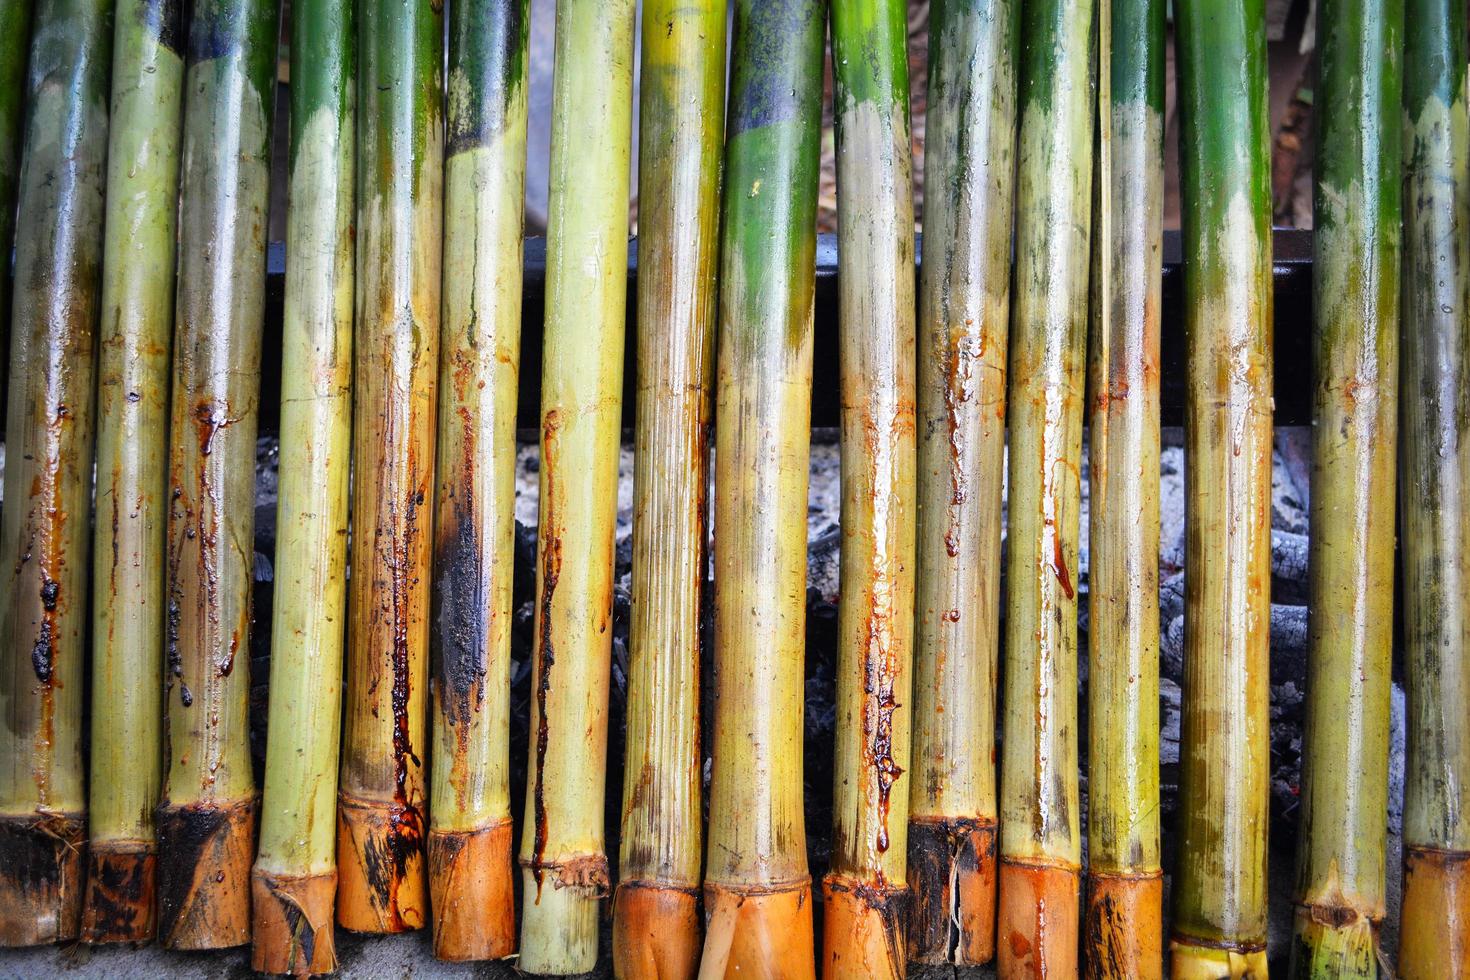 arroz glutinoso assado em juntas de bambu foto